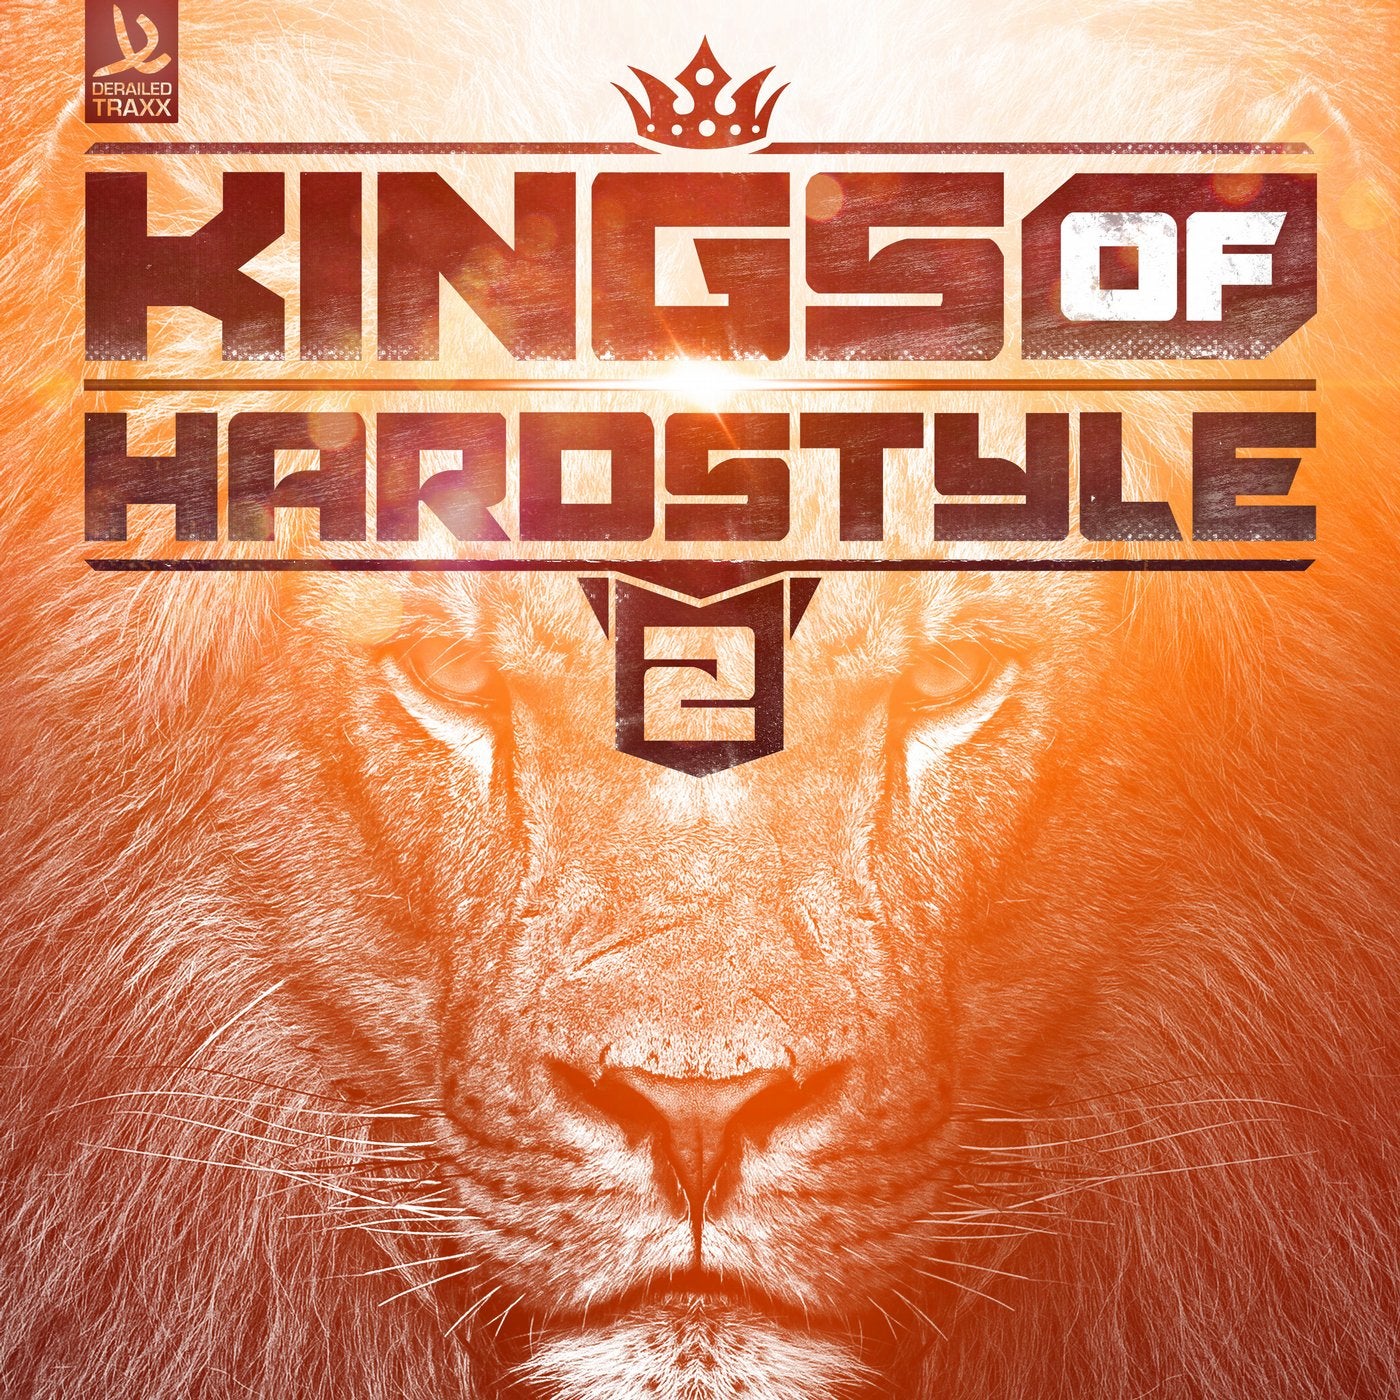 Kings Of Hardstyle Vol. 2